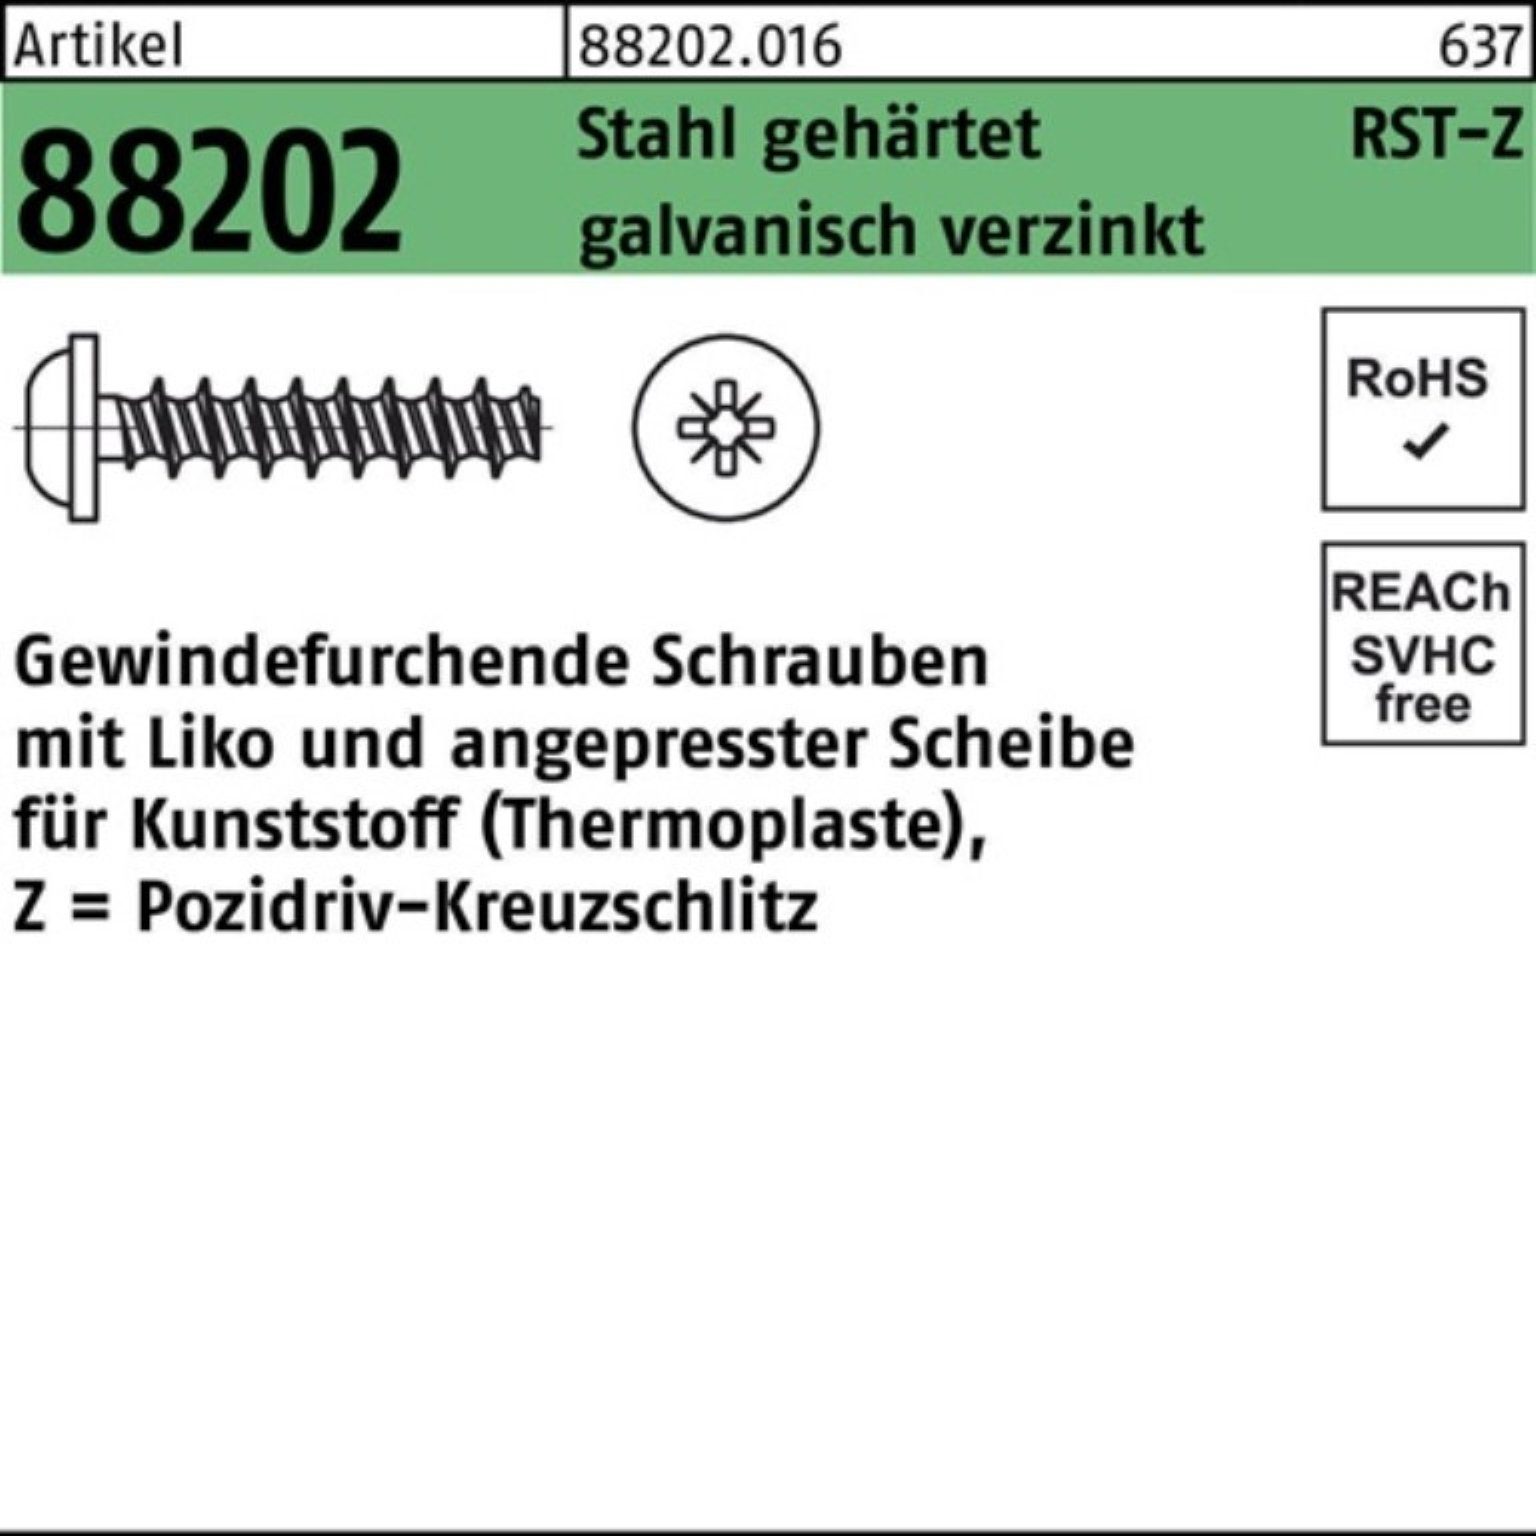 Reyher Gewindeschraube 500er Pack Liko 88202 PZ R Stahl gehä Gewindefurchendeschraube 5x12-Z